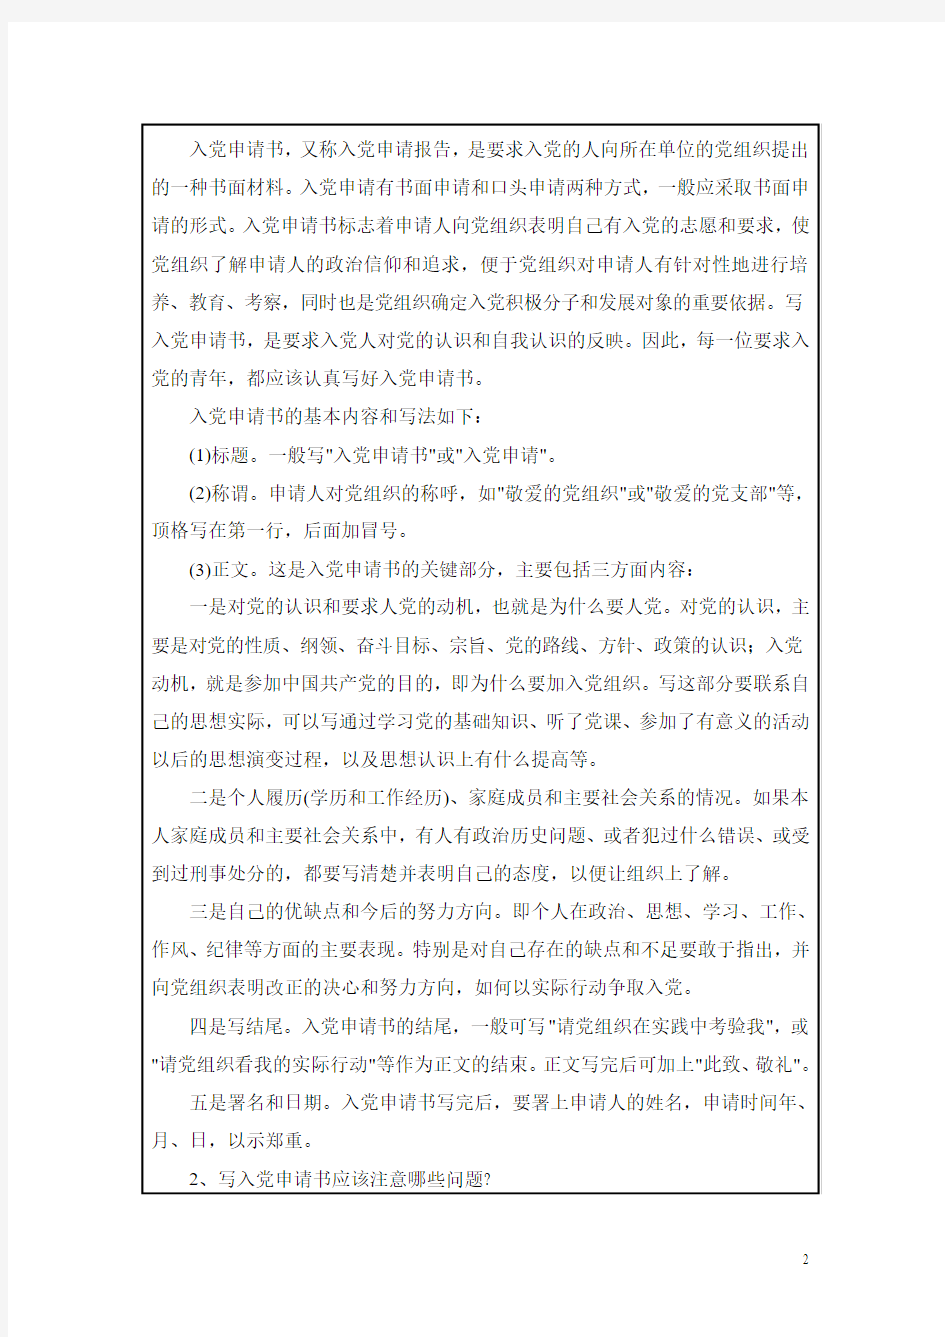 沂南县第四实验小学2012年上半年党员主题实践活动记录